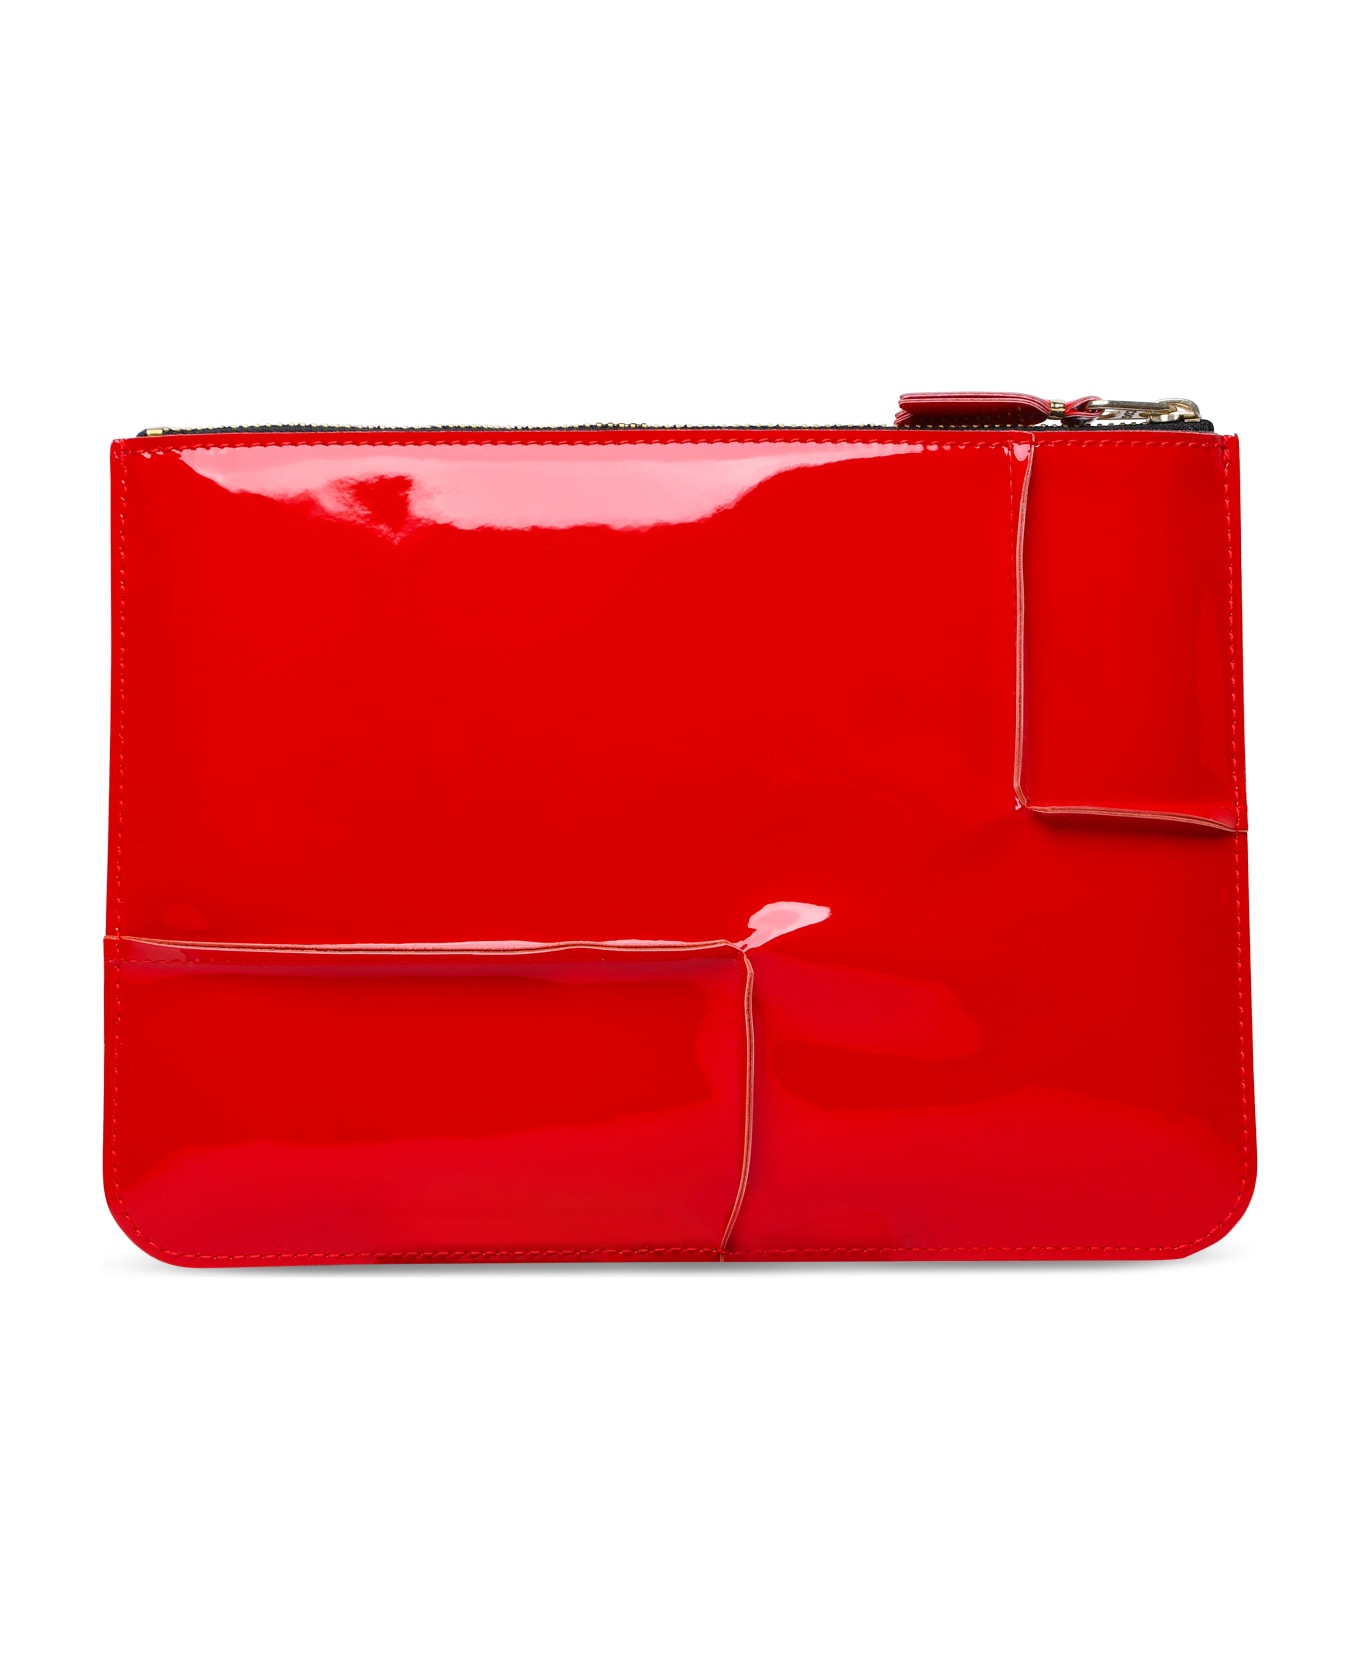 Comme des Garçons Wallet 'medley' Red Leather Envelope - Red 財布